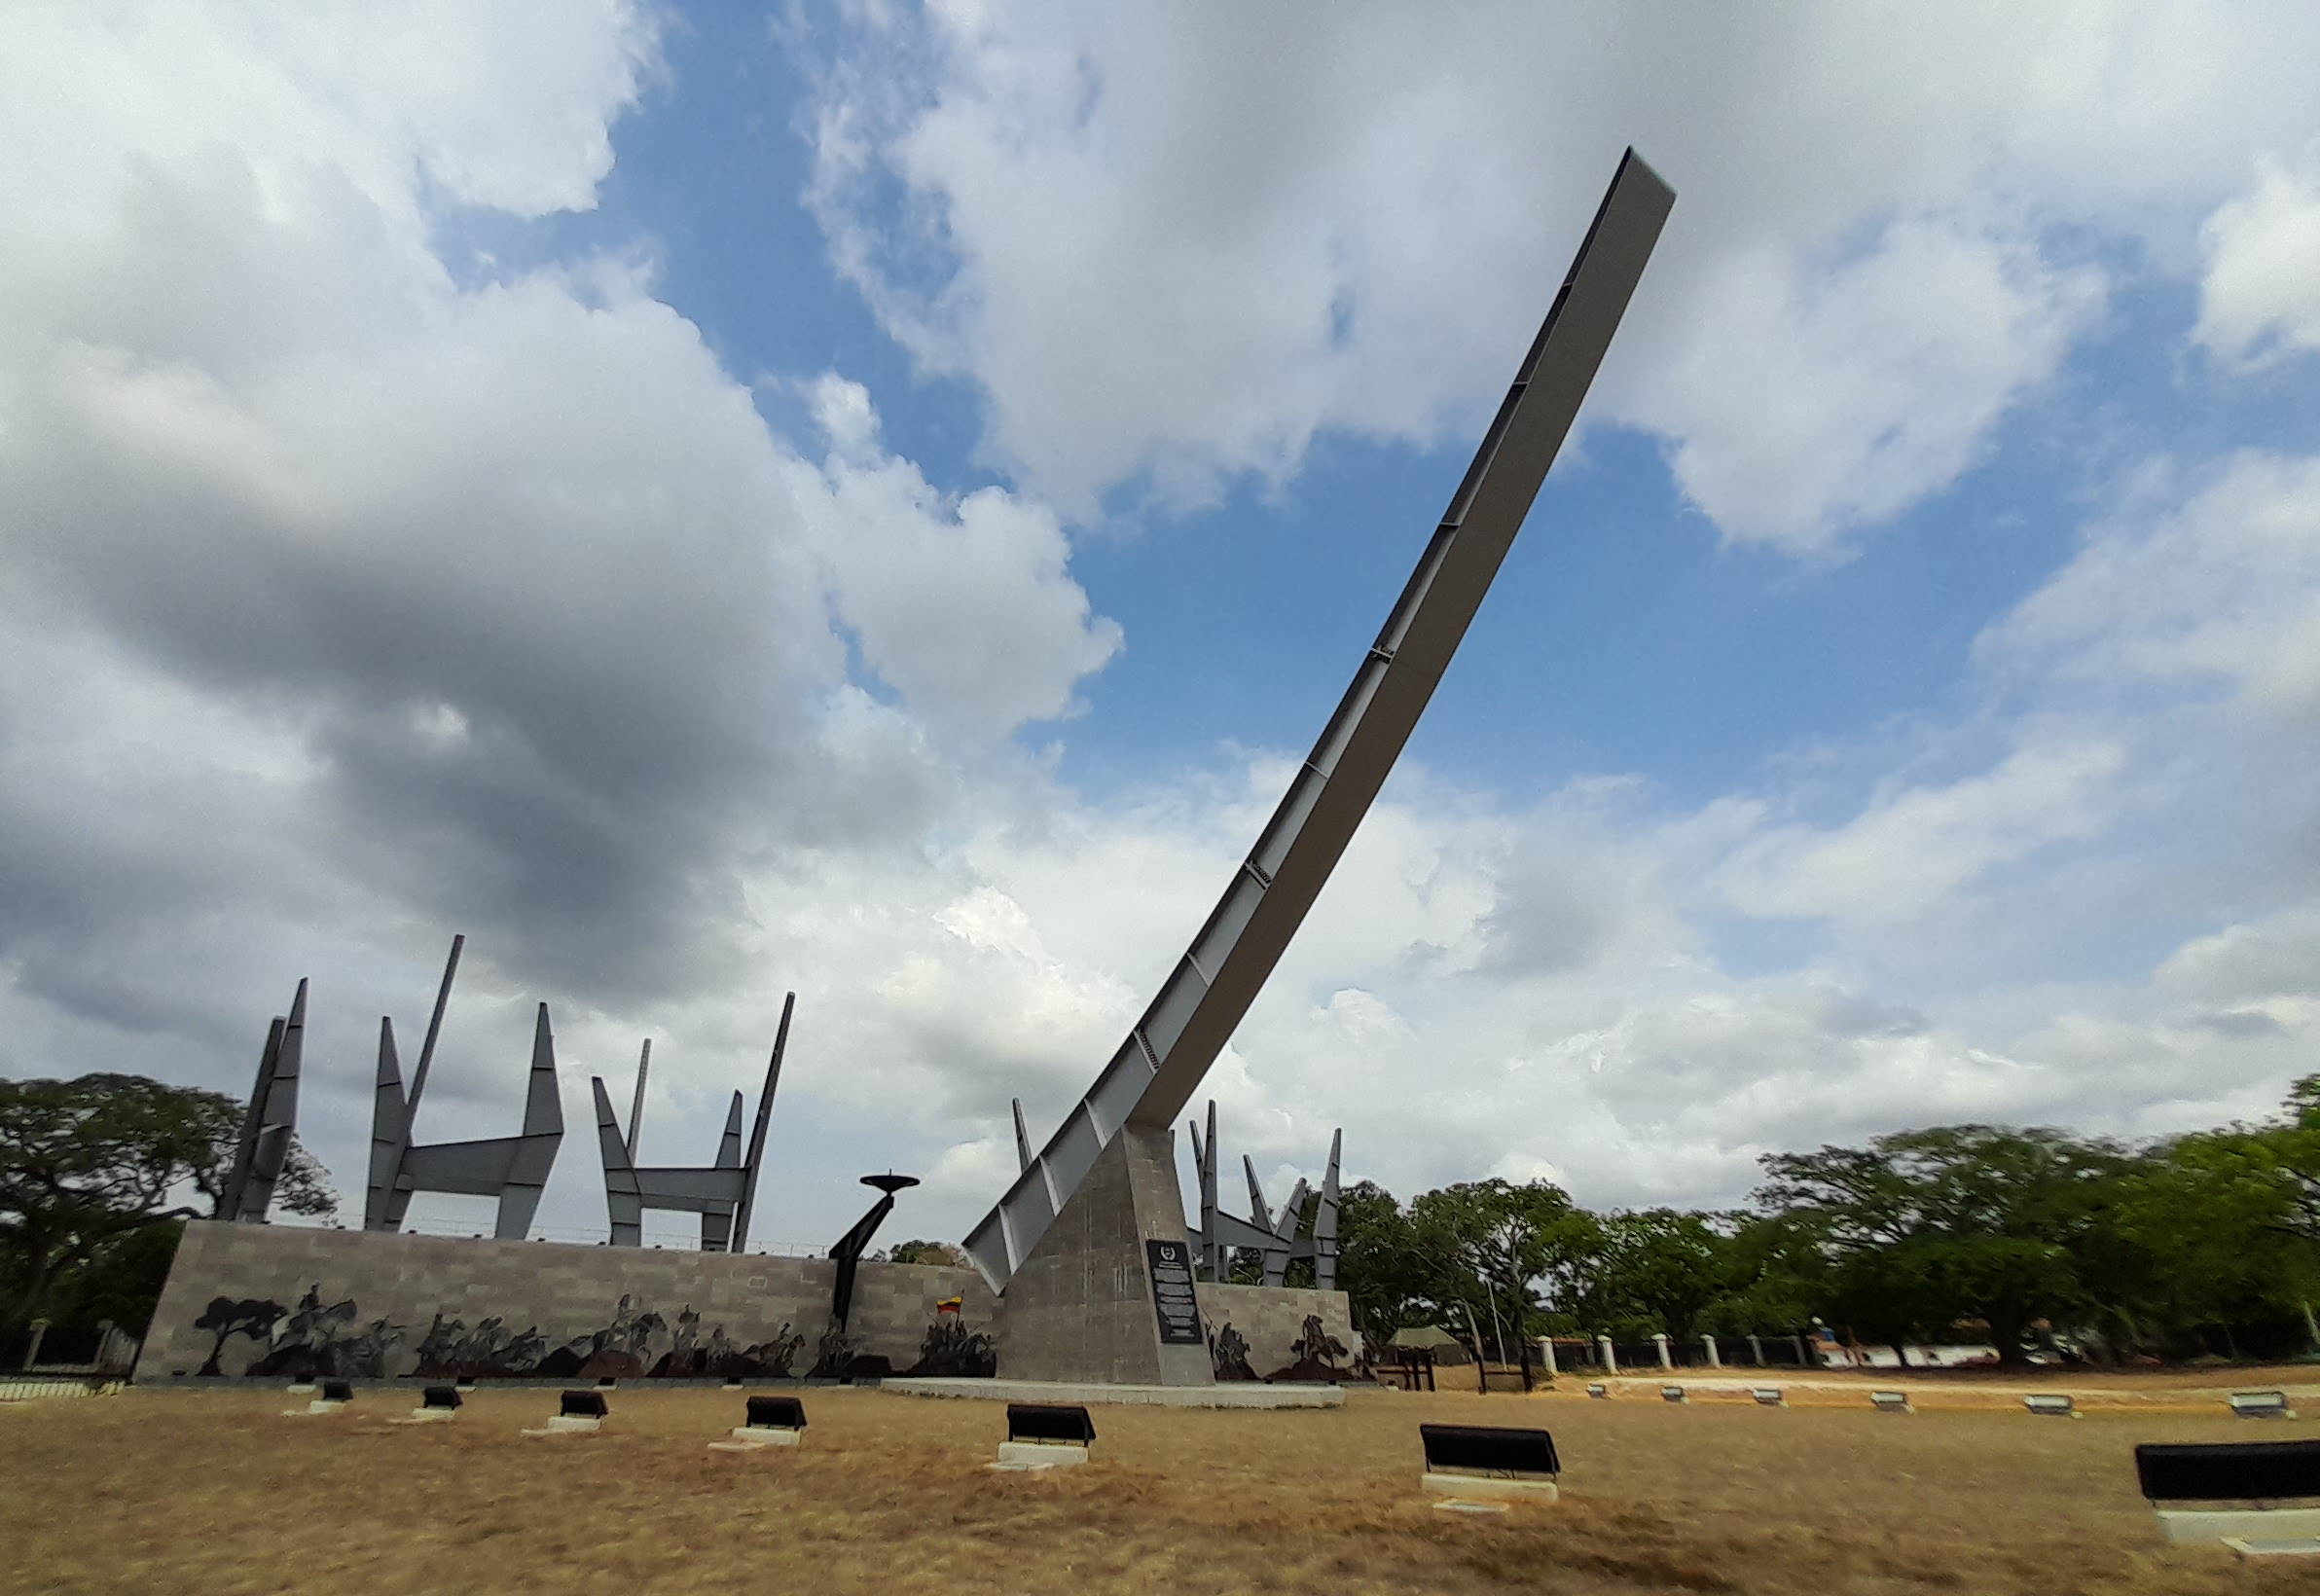 Monumento que simboliza la espada de Bolvar en el campo de carabobo